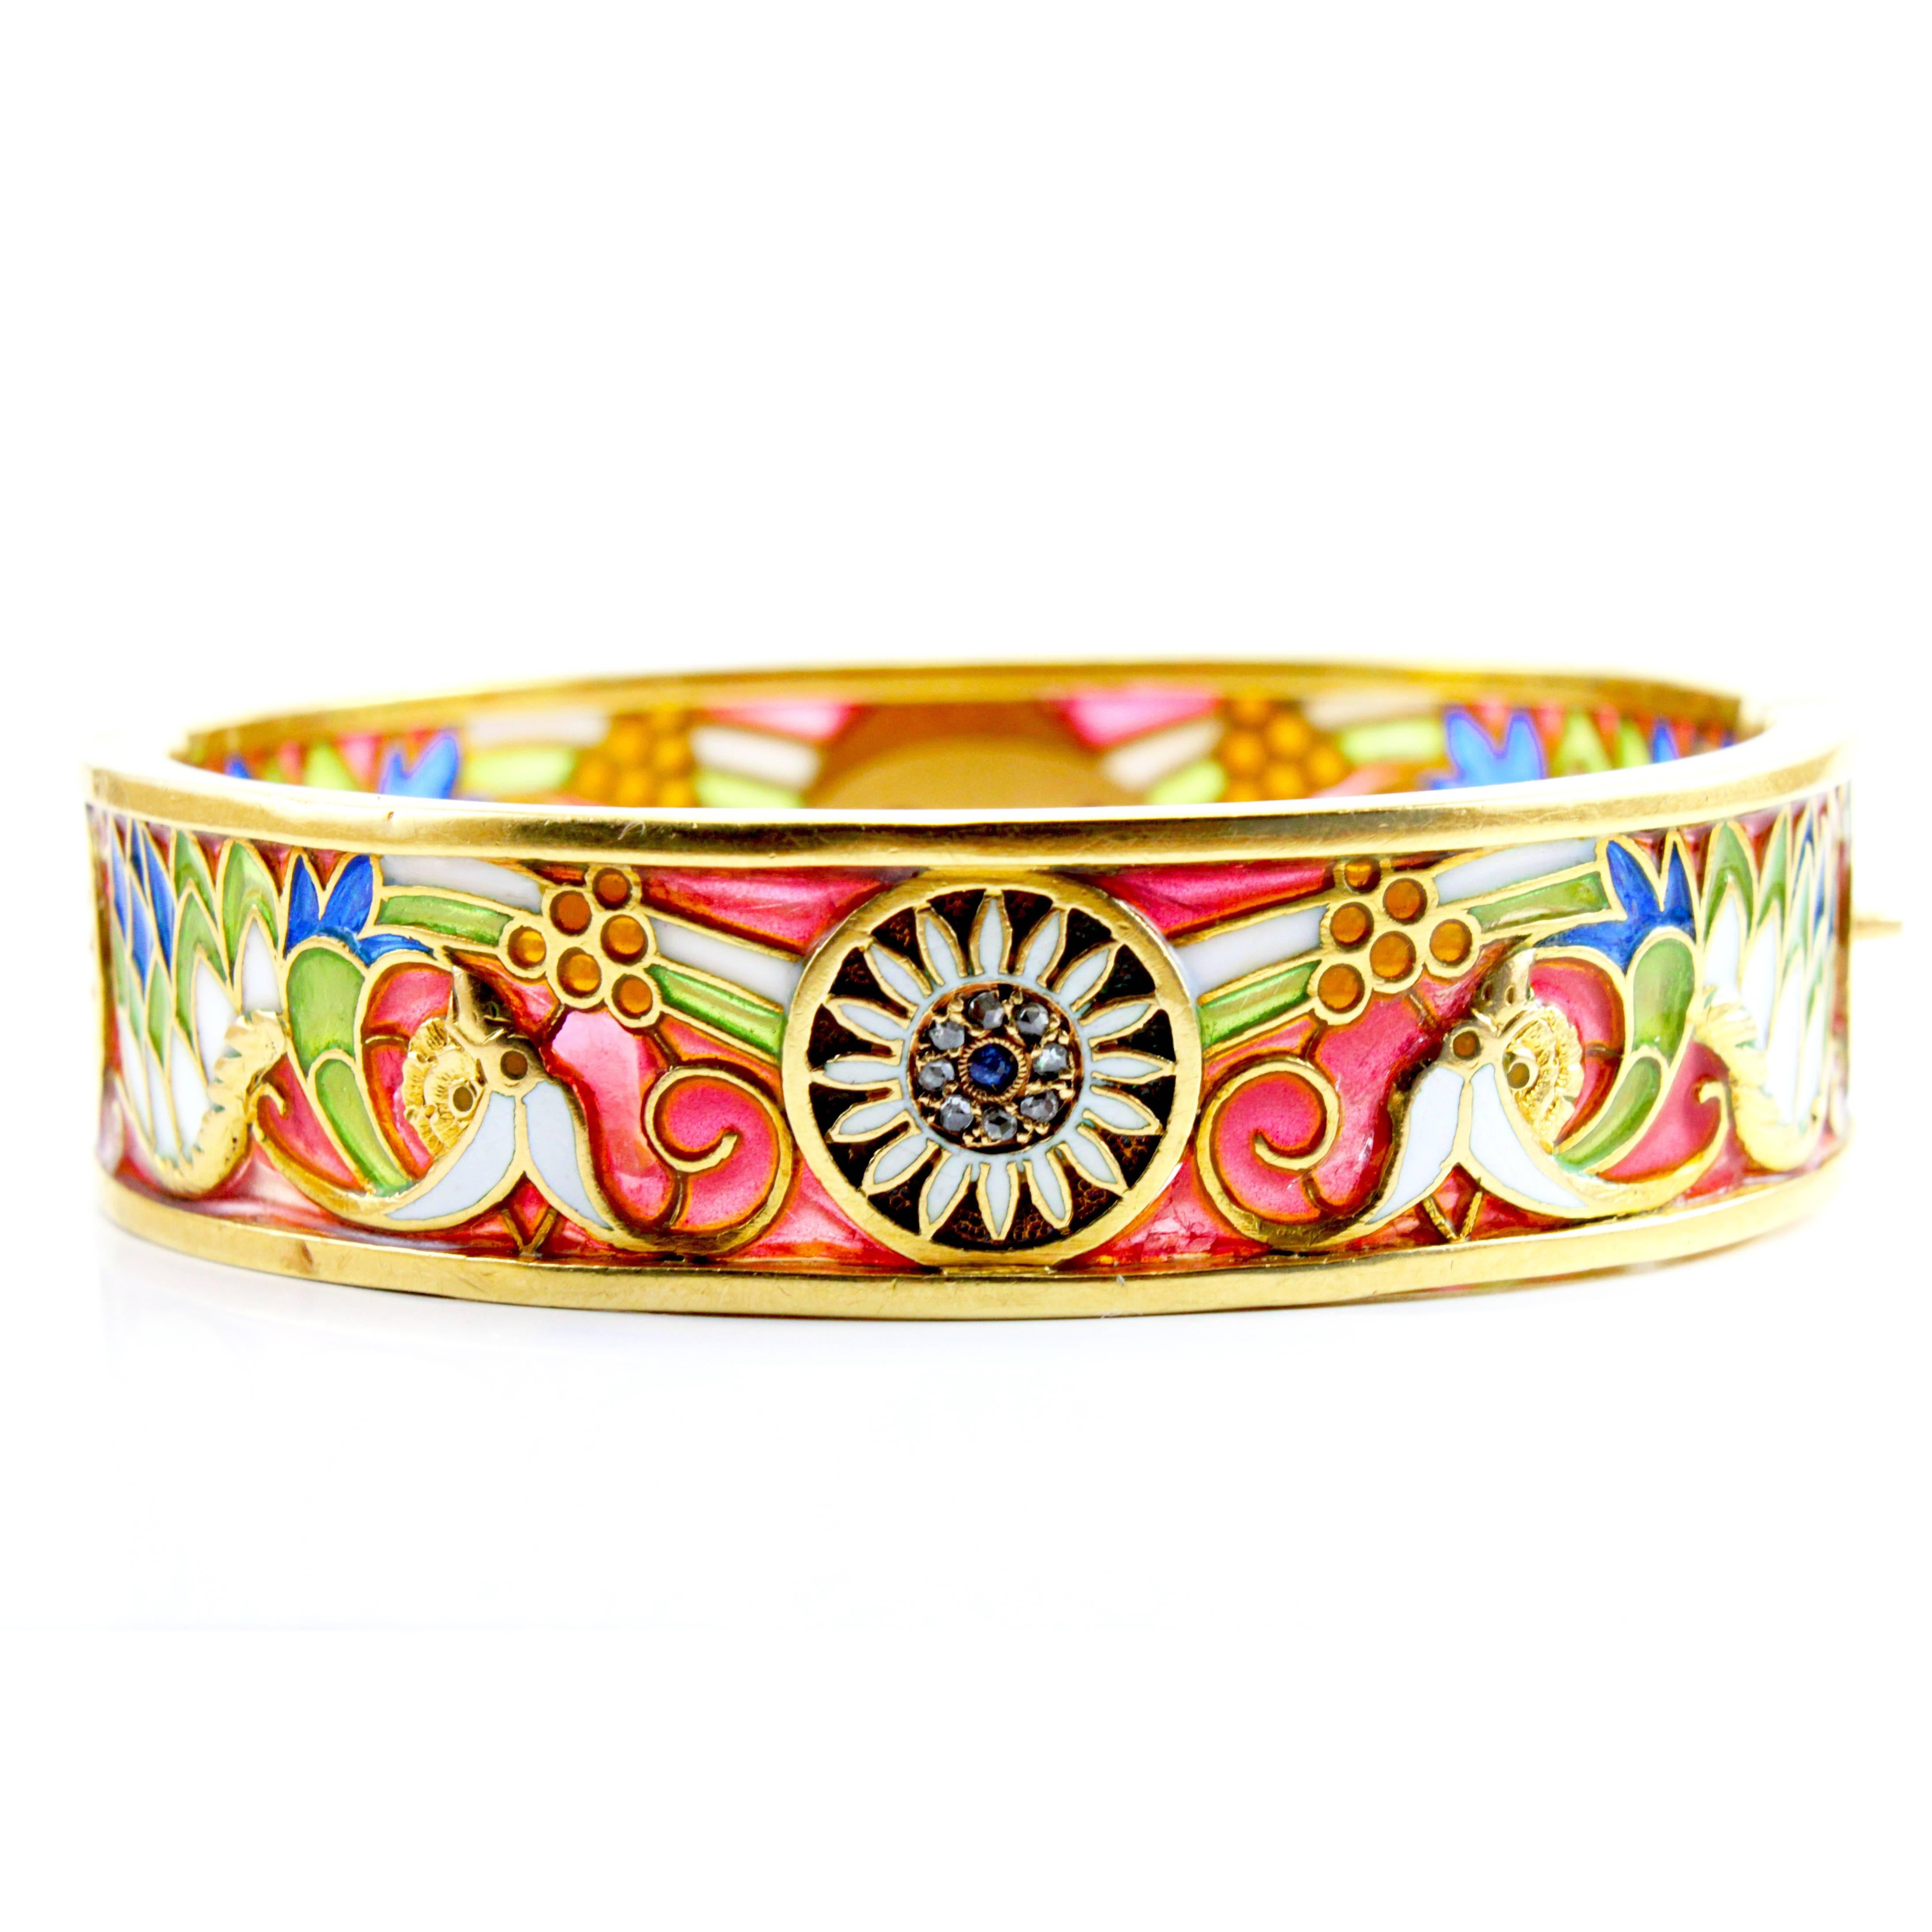 Masriera y Carreras Art Nouveau Plique a Jour Enamel 18K Gold Bangle Bracelet 2